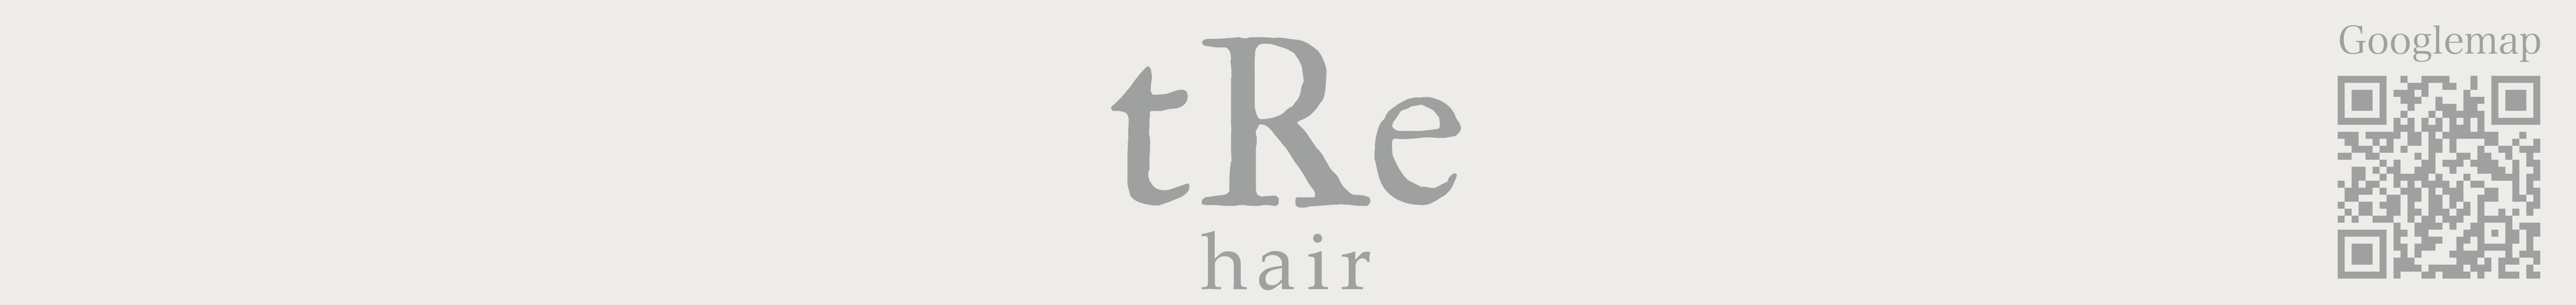 tRe hair nijo logo